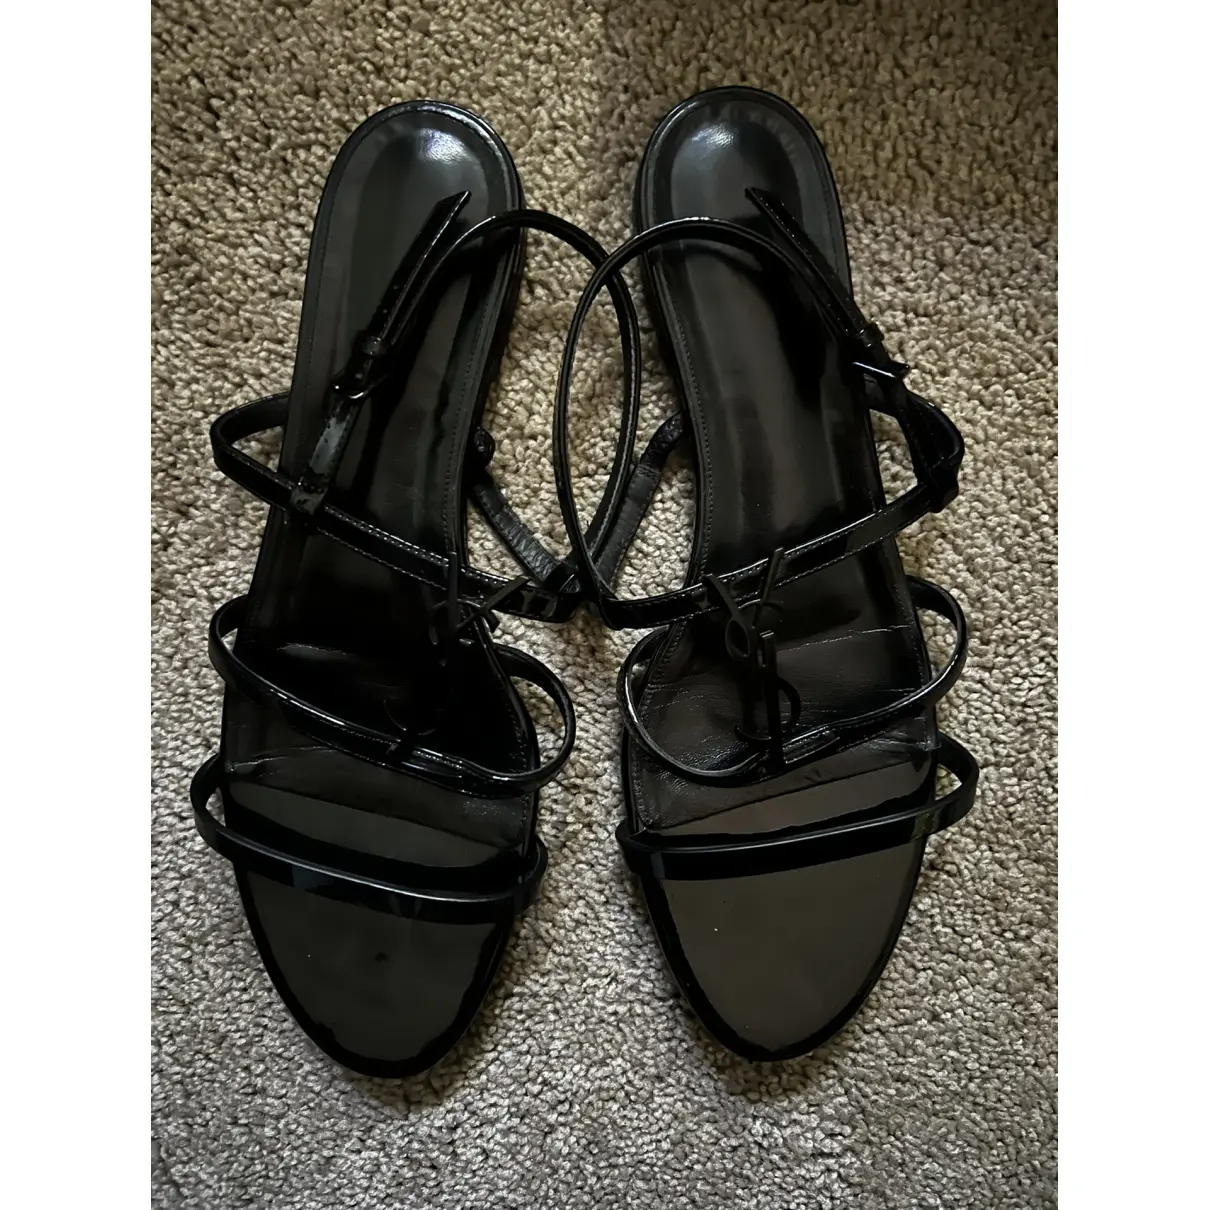 Buy Saint Laurent Tribute leather sandal online